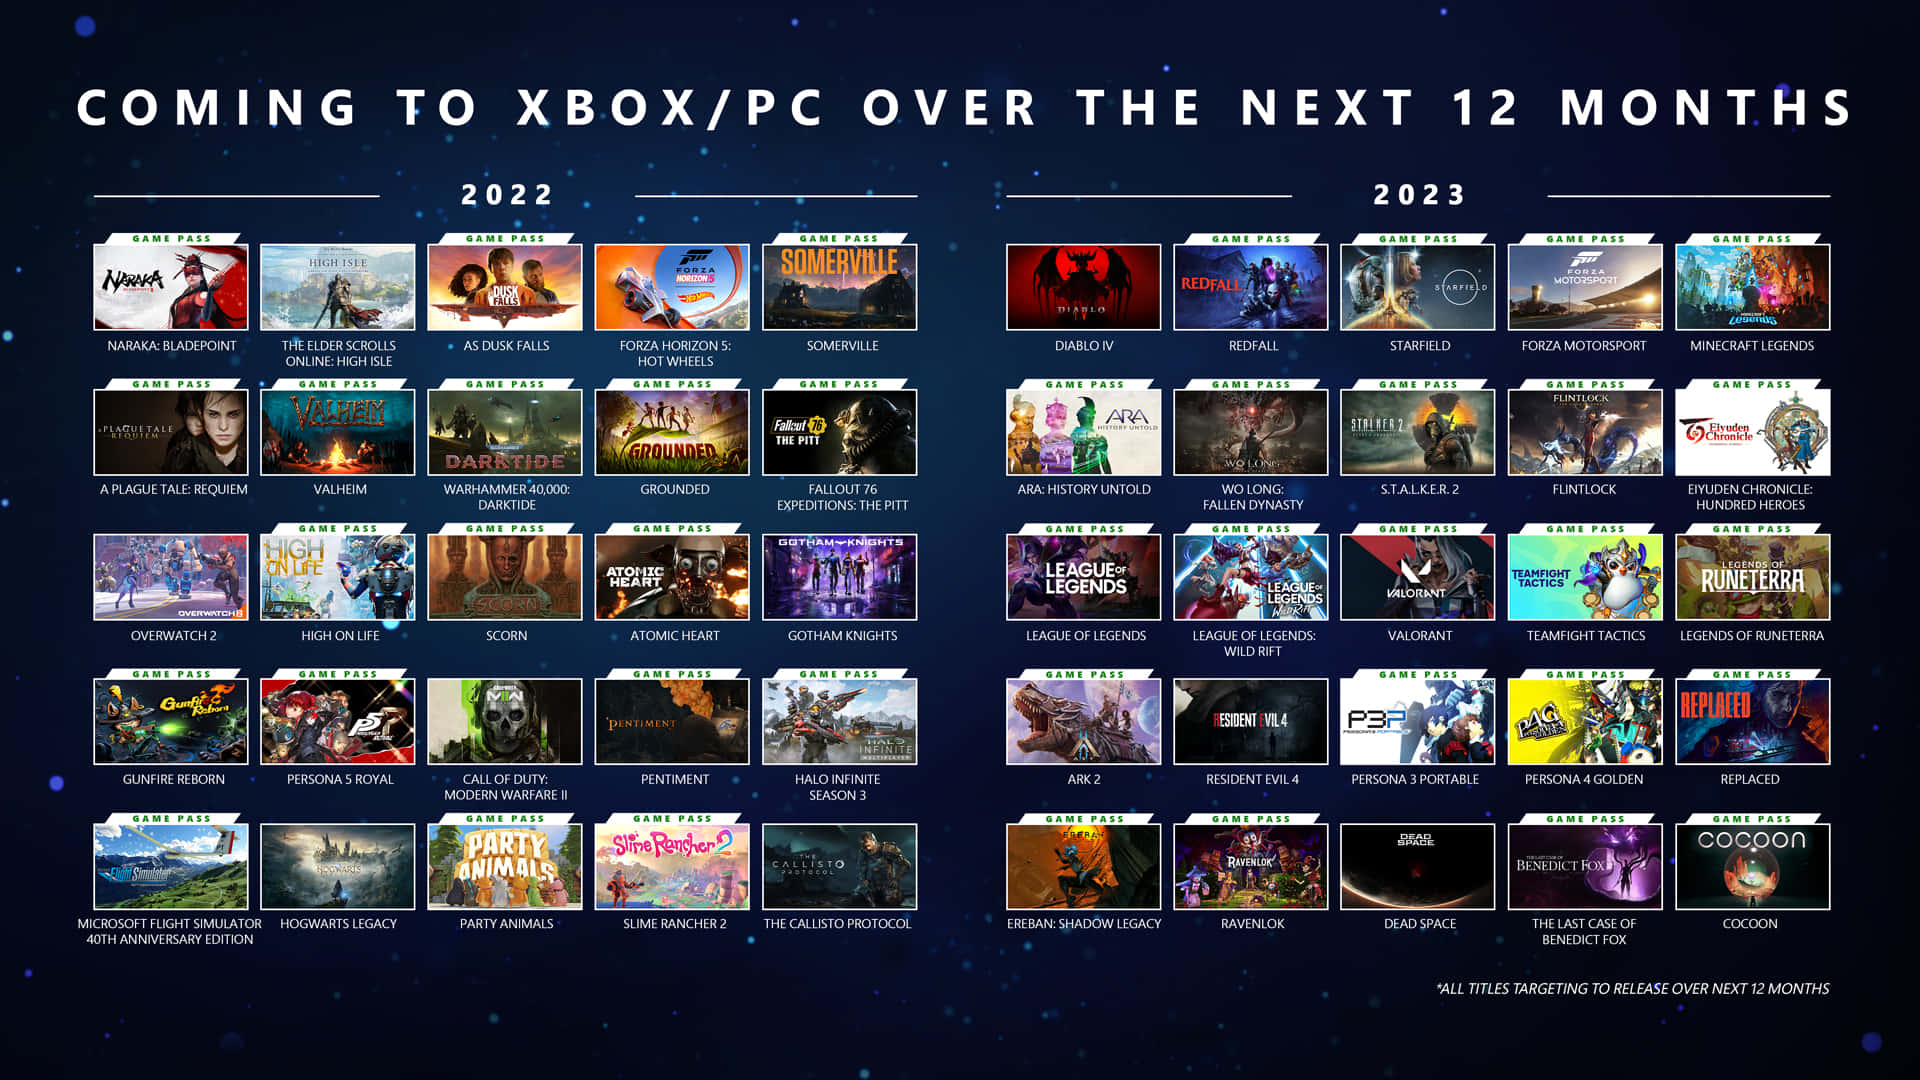 Xboxpc Kommer Til Xbox Inden For De Næste 12 Måneder.